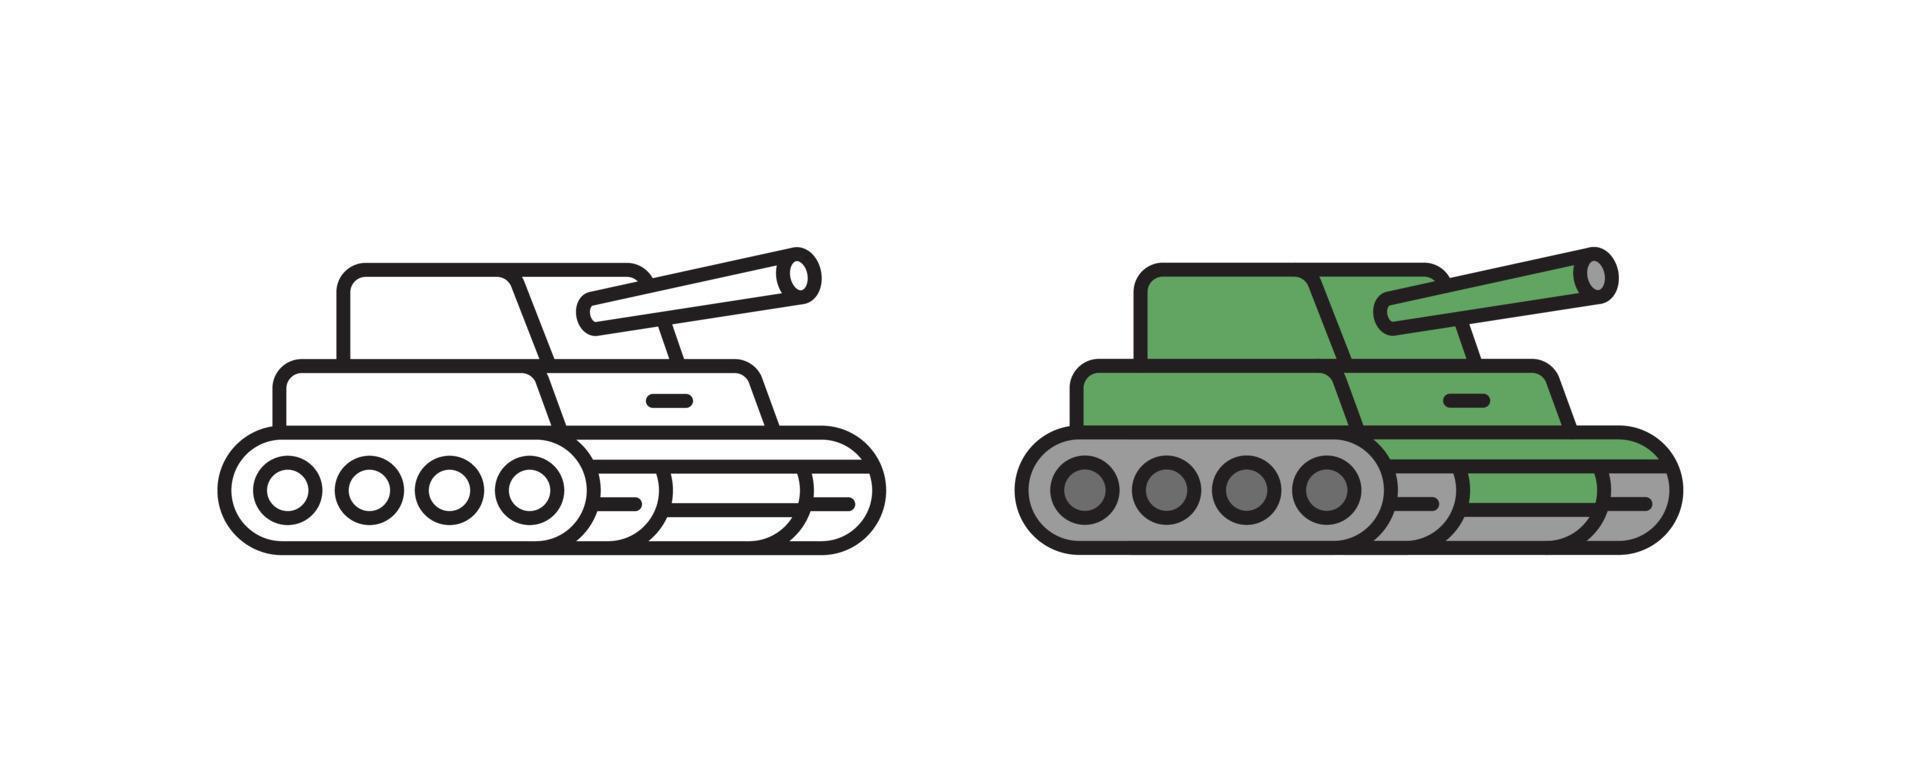 icono del tanque. símbolo de transporte en vector de estilo lineal.